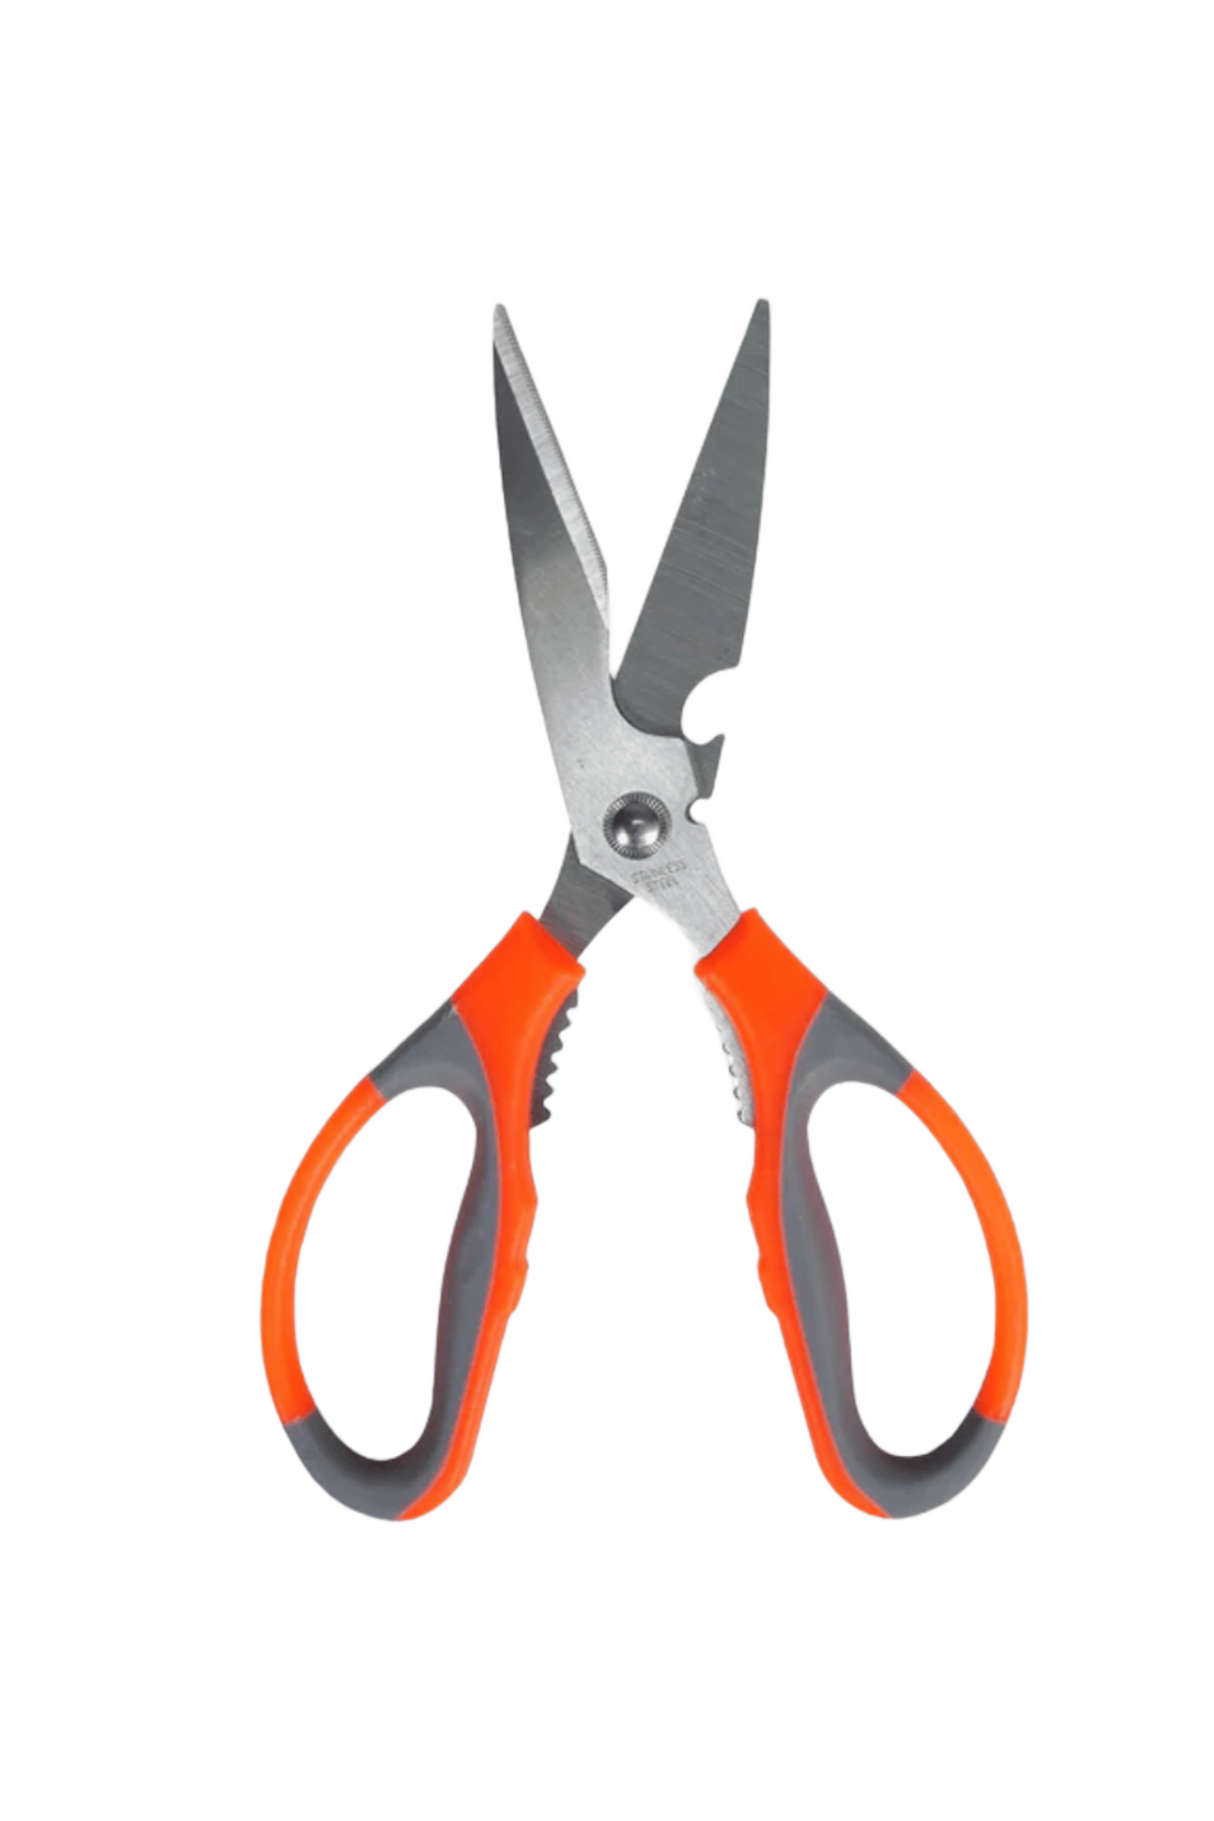 kitchen scissors 9340